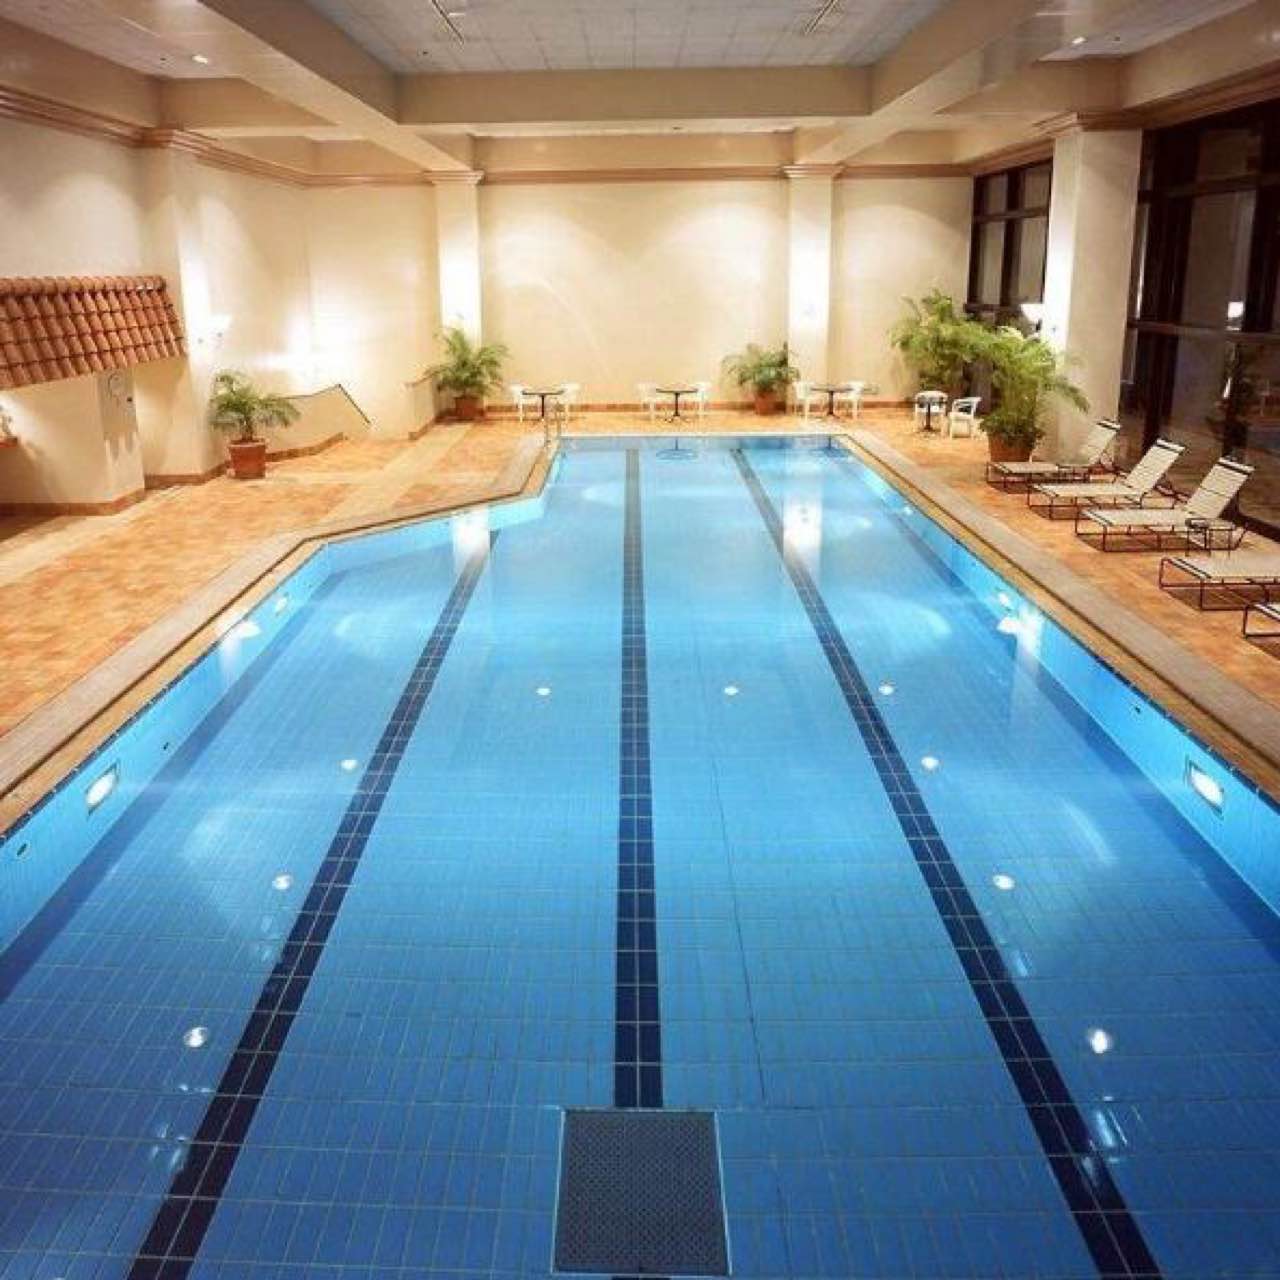 室内恒温游泳池室外游泳池提供洗浴教练服务